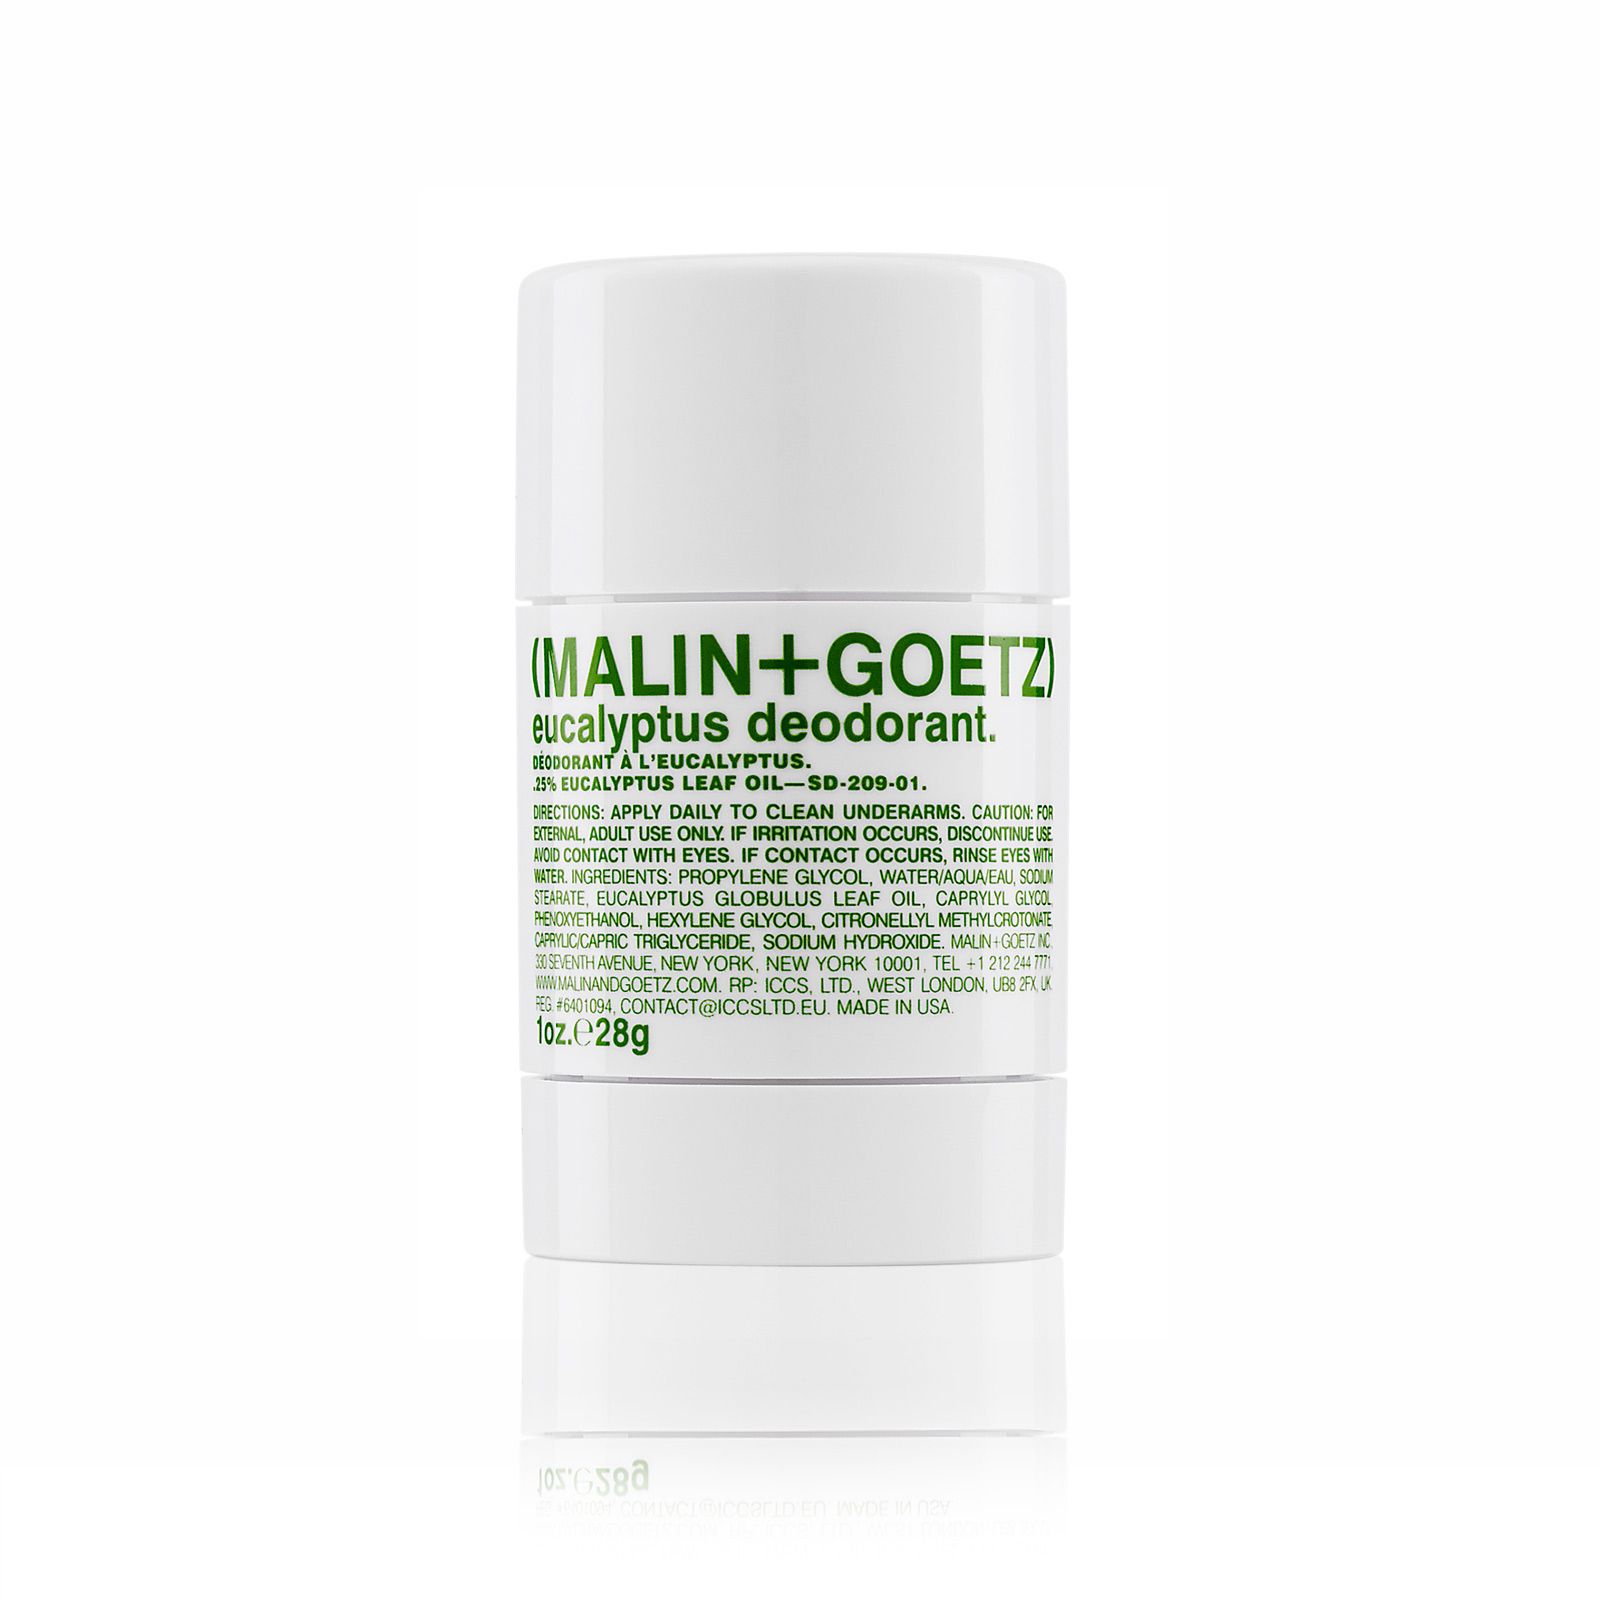 MALIN+GOETZ Eucalyptus Deodorant 28 gr.